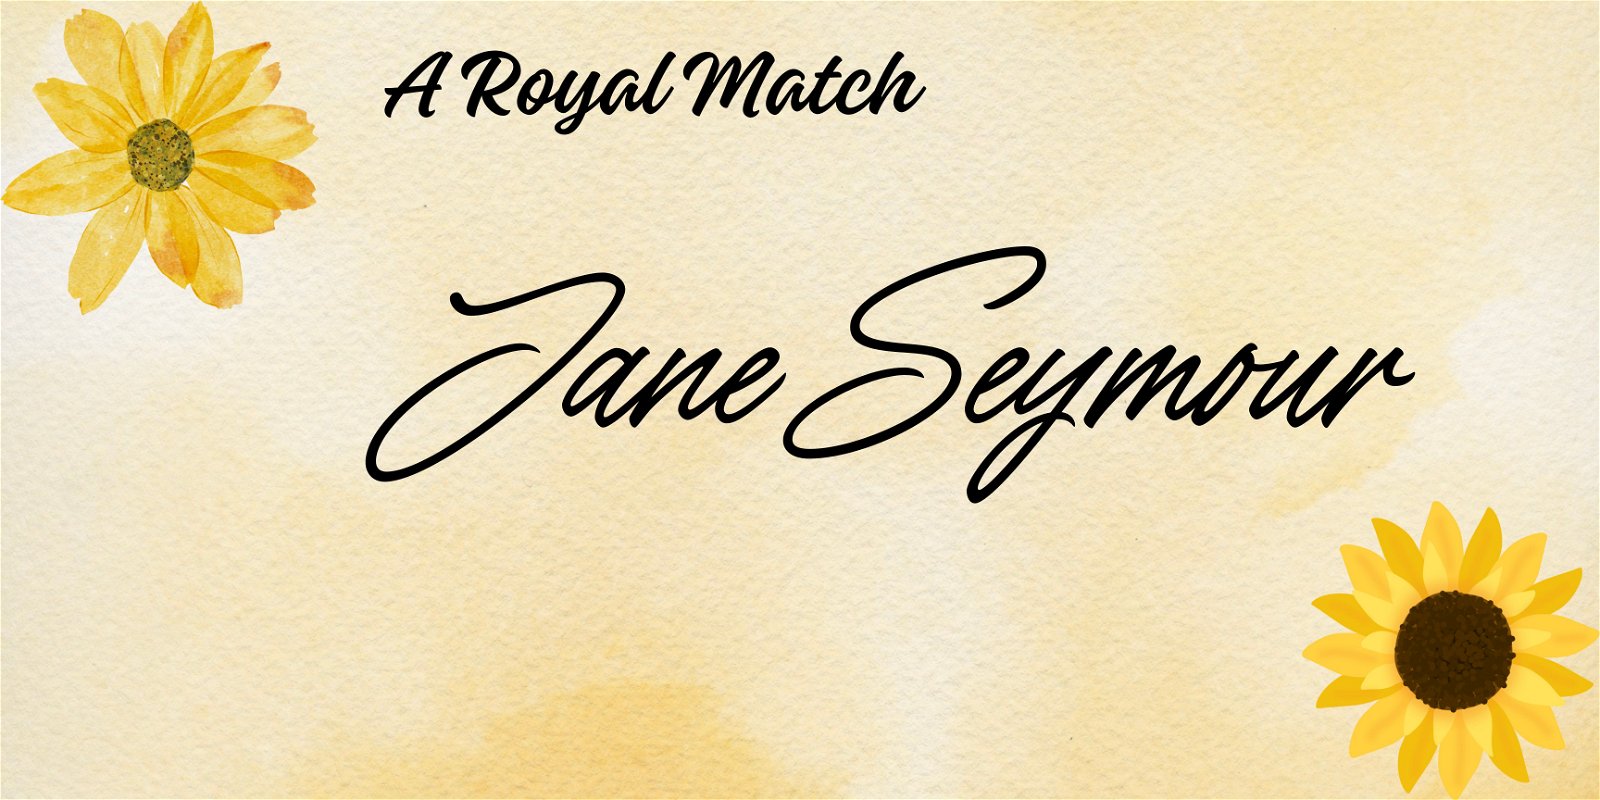 A Royal Match: Jane Seymour